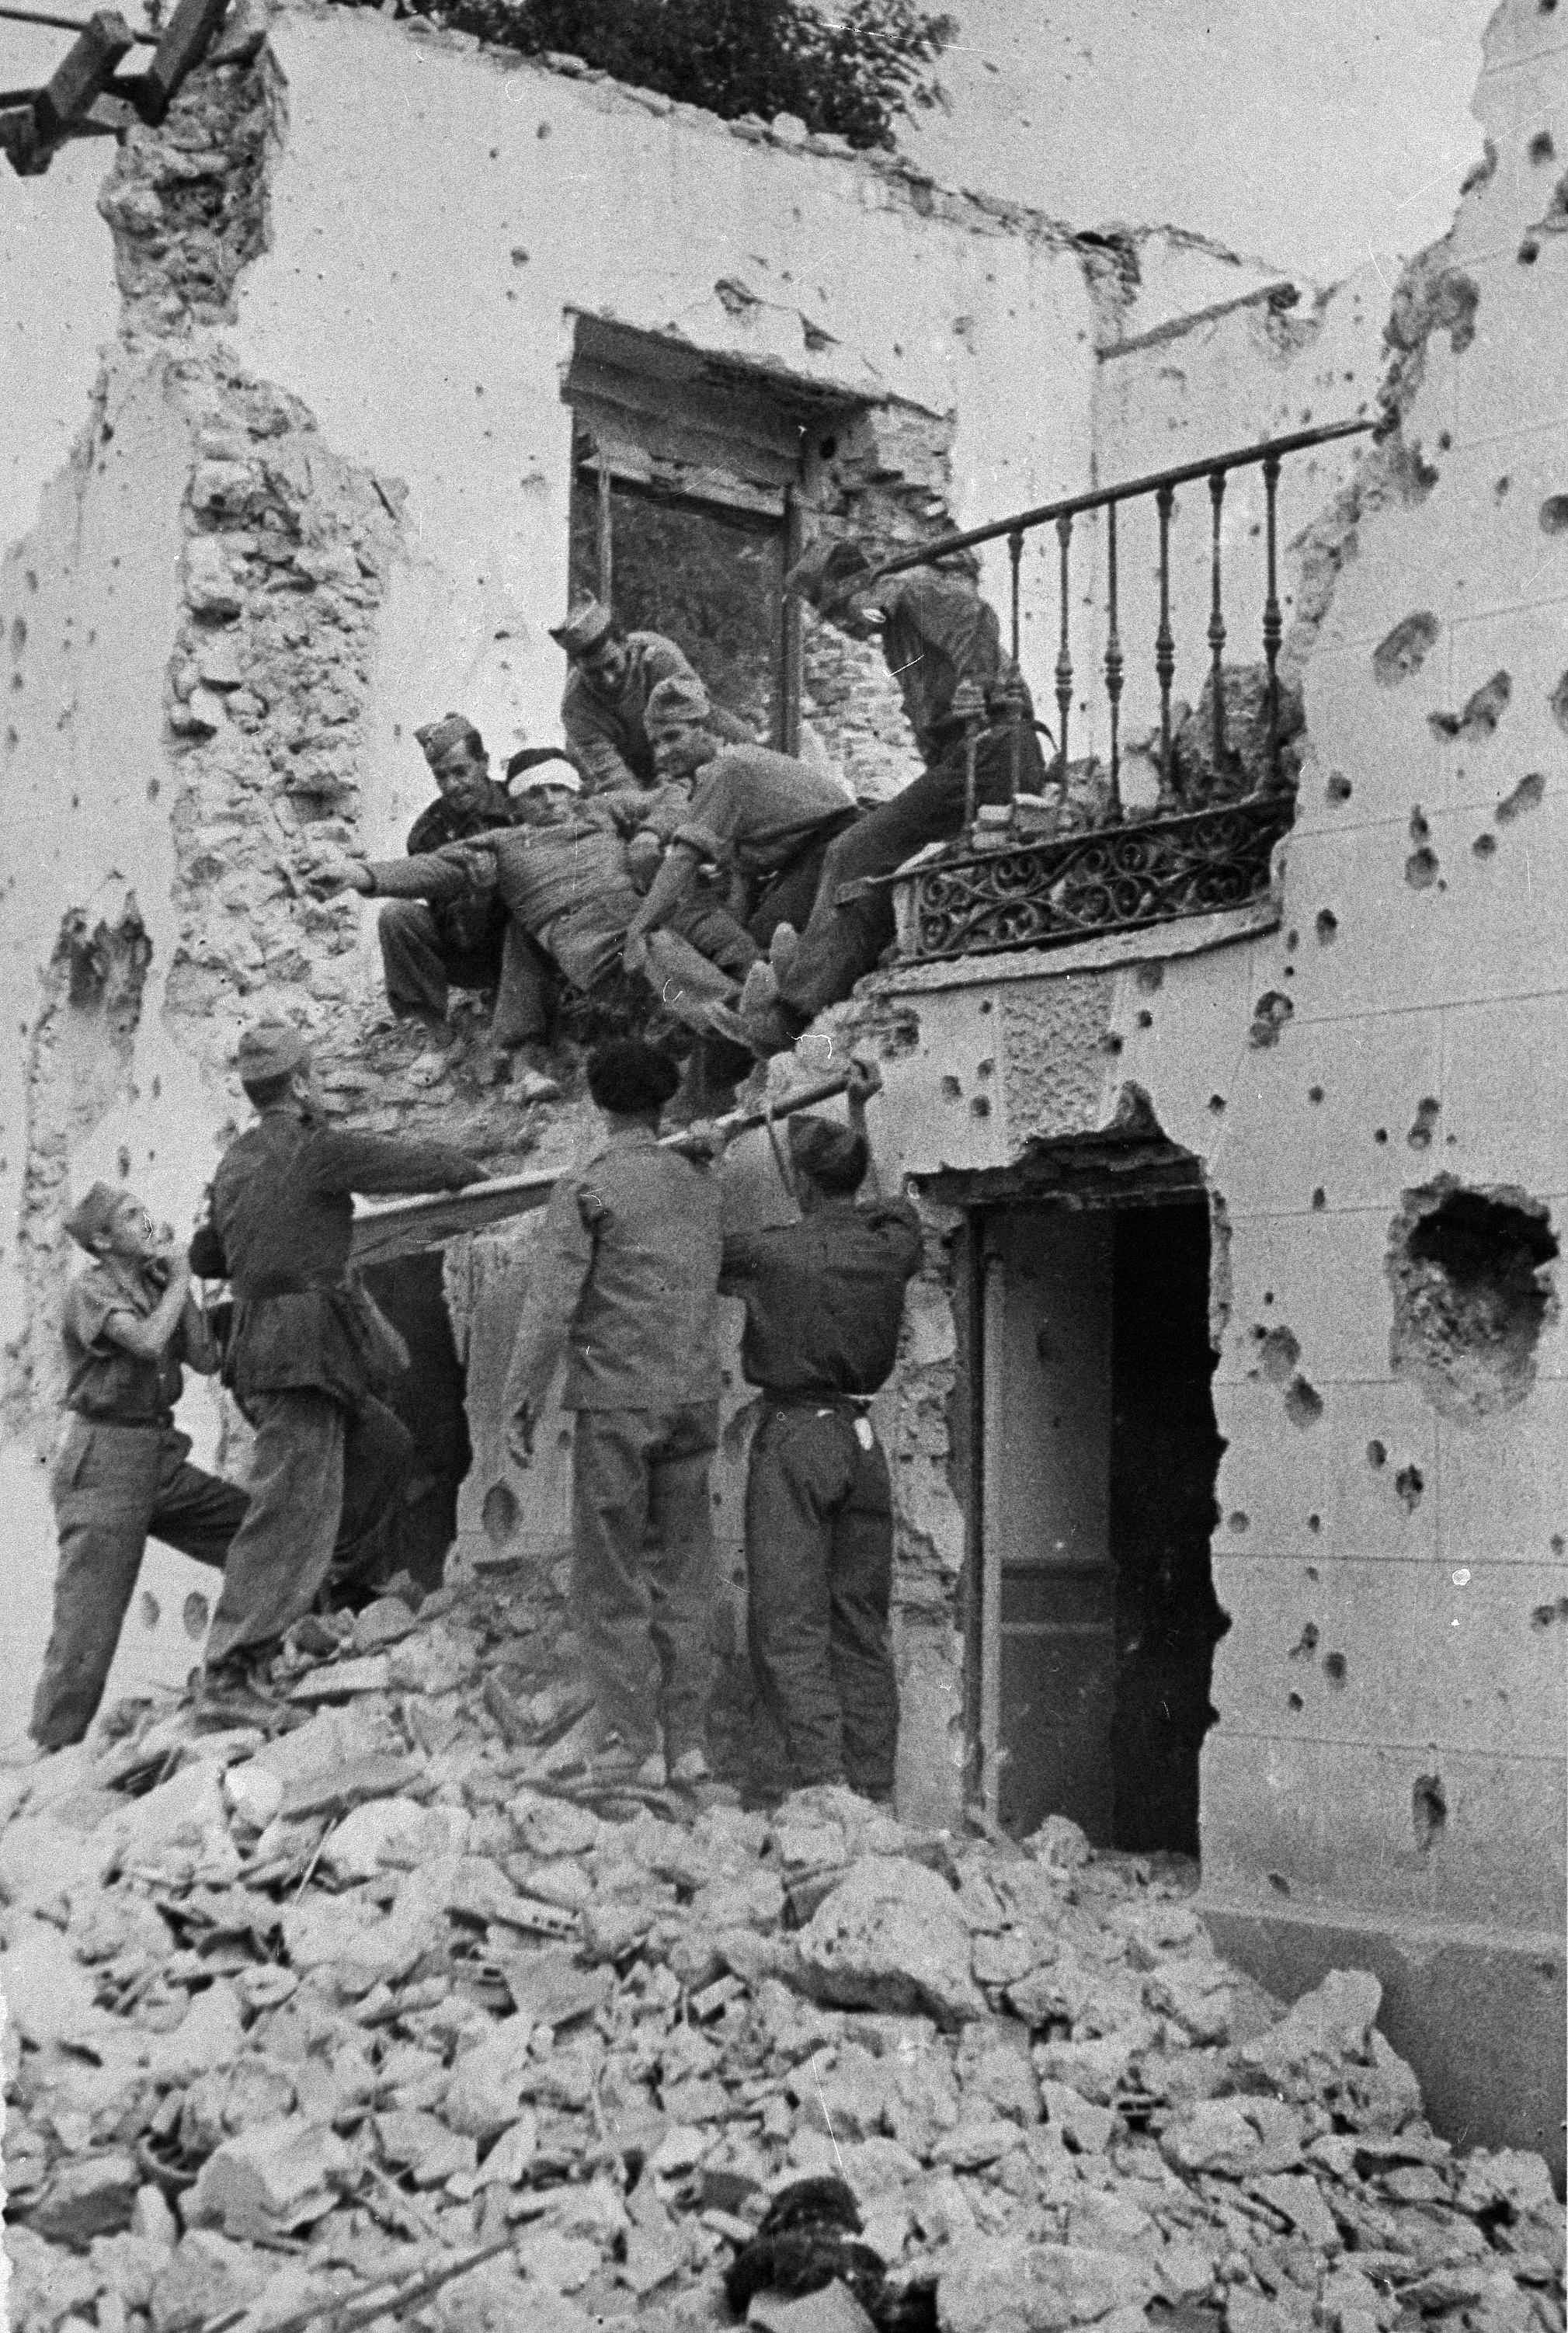  Regjeringssoldater evakuerer en såret soldat under kampene i Madrid i oktober 1937. 